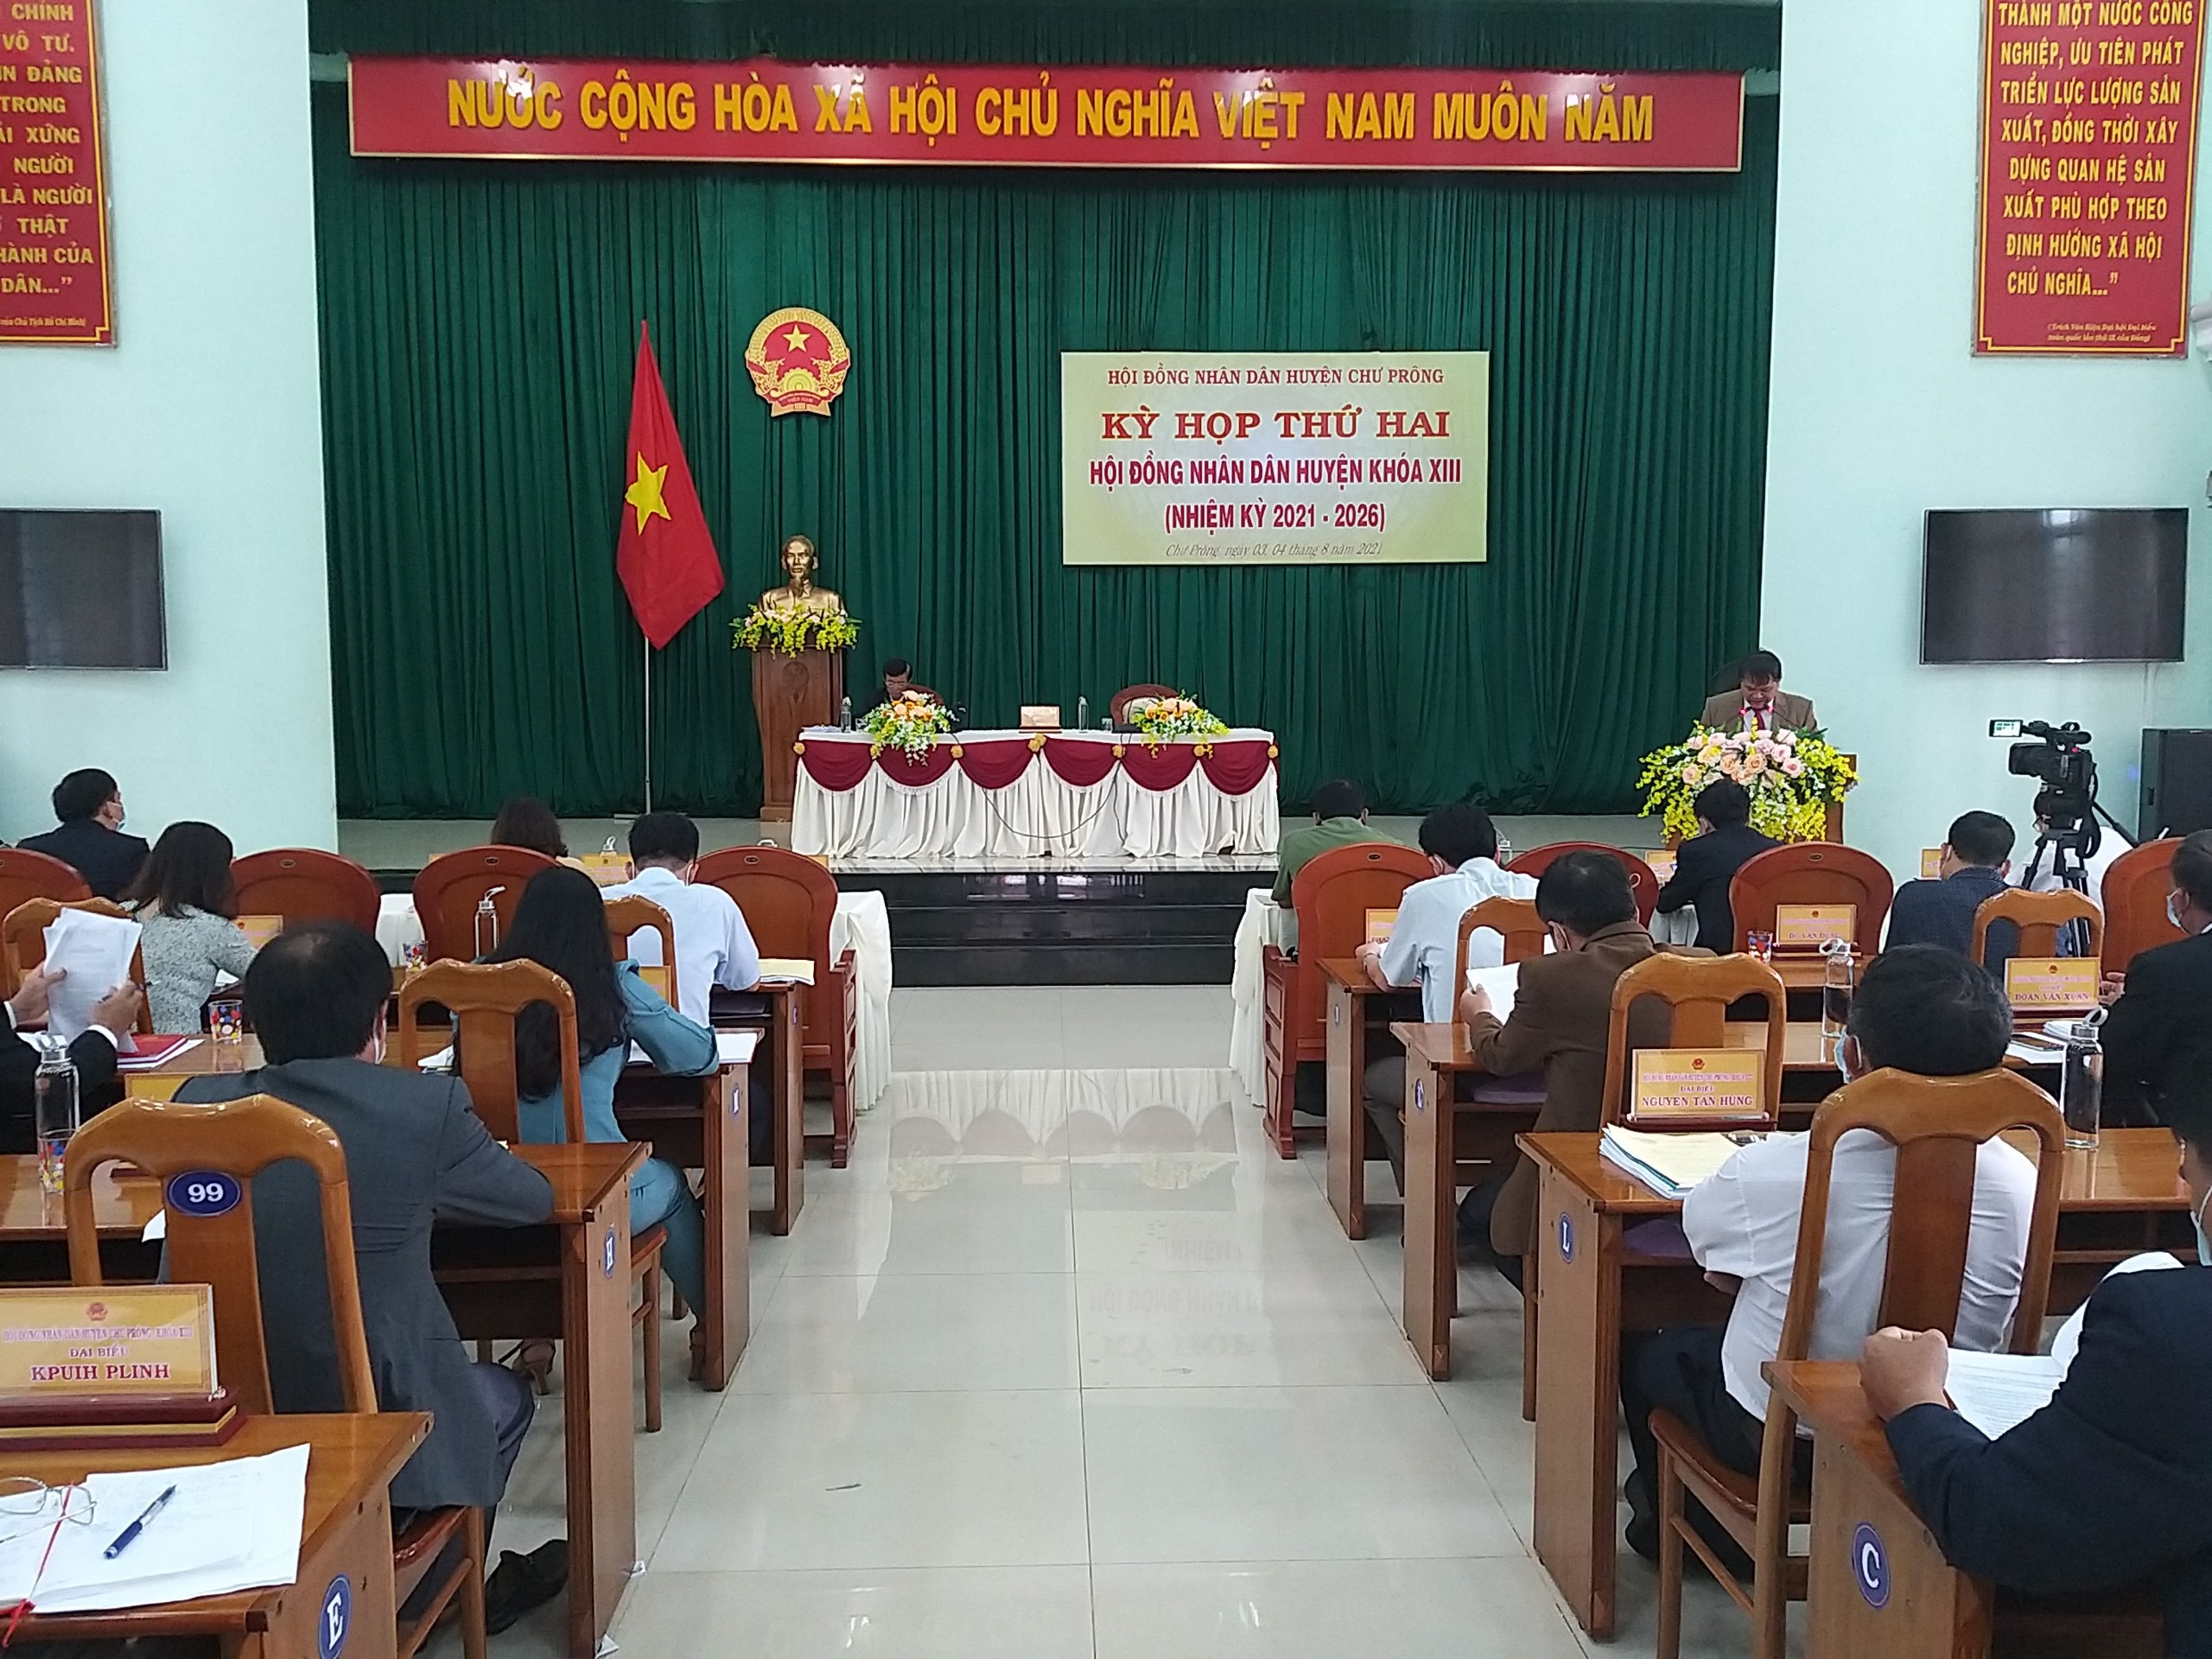 Article Hội đồng nhân dân huyện Chư Prông tổ chức Kỳ họp thứ Hai, khóa XIII, nhiệm kỳ 2021 – 2026